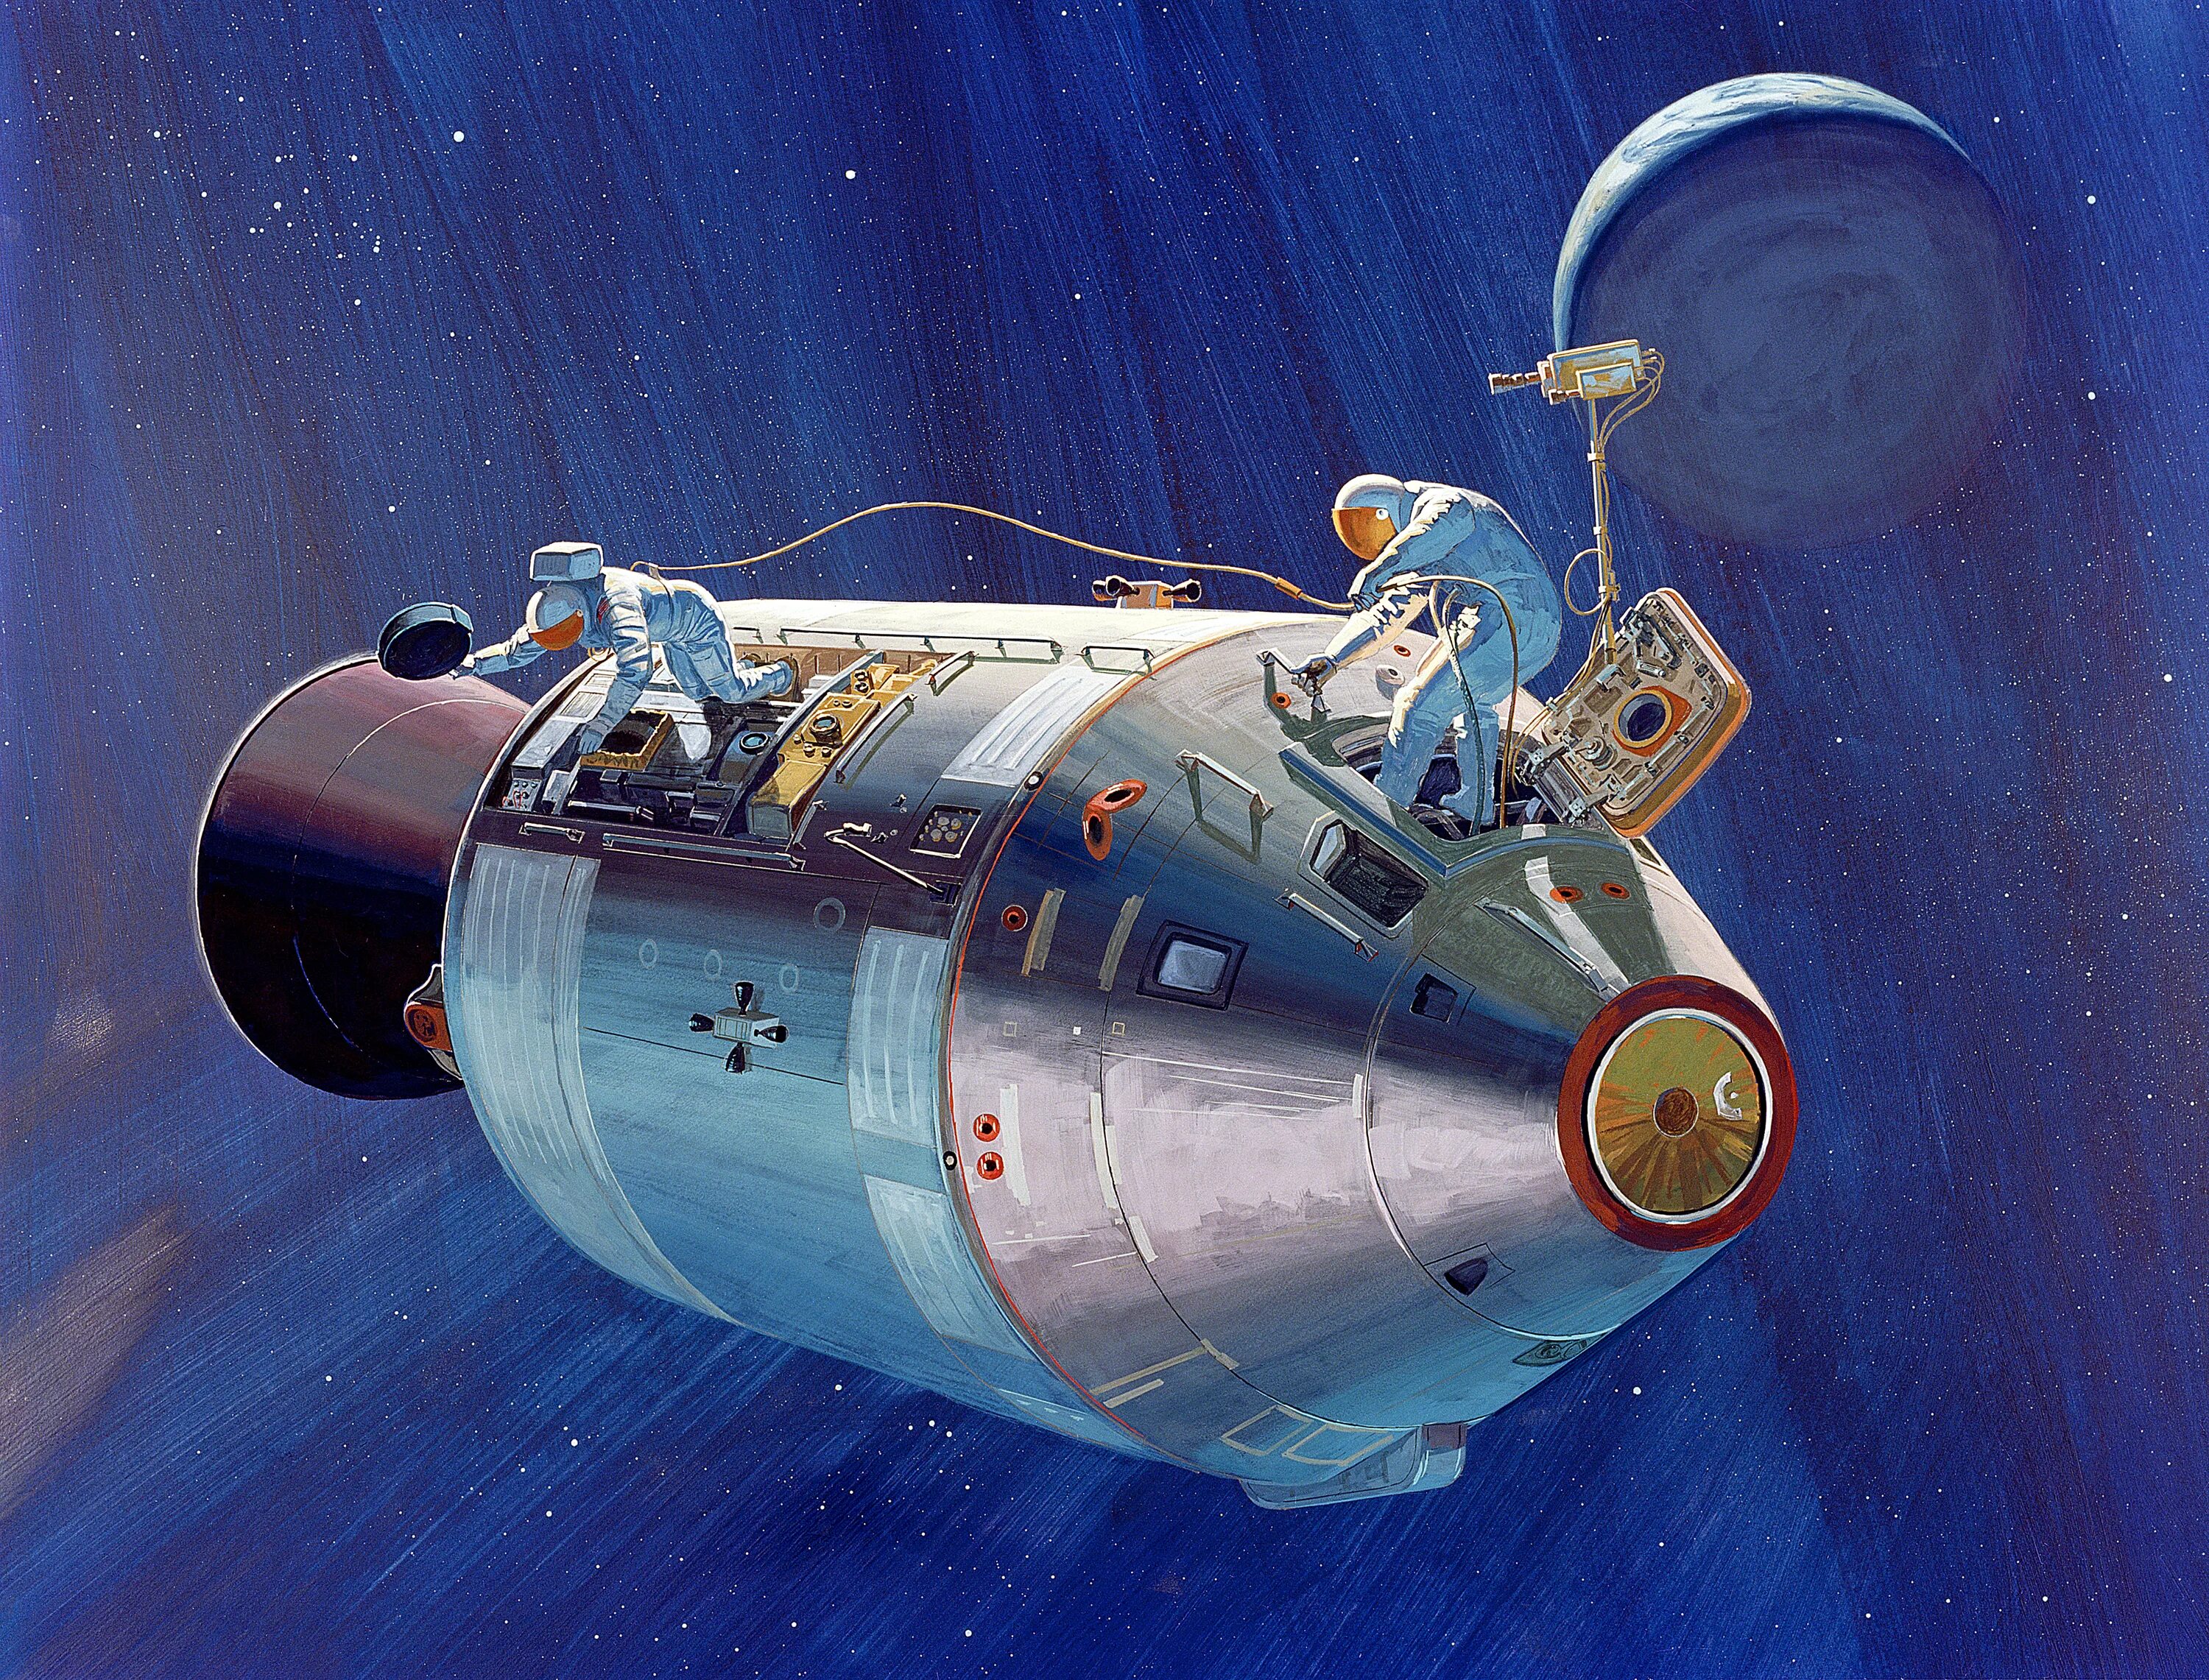 Какой из кораблей летал в космос. Аполлон 13 космический корабль. Космический корабль Аполлон 15. Космический корабль Аполлон 11. Лунный модуль Аполлон 15.